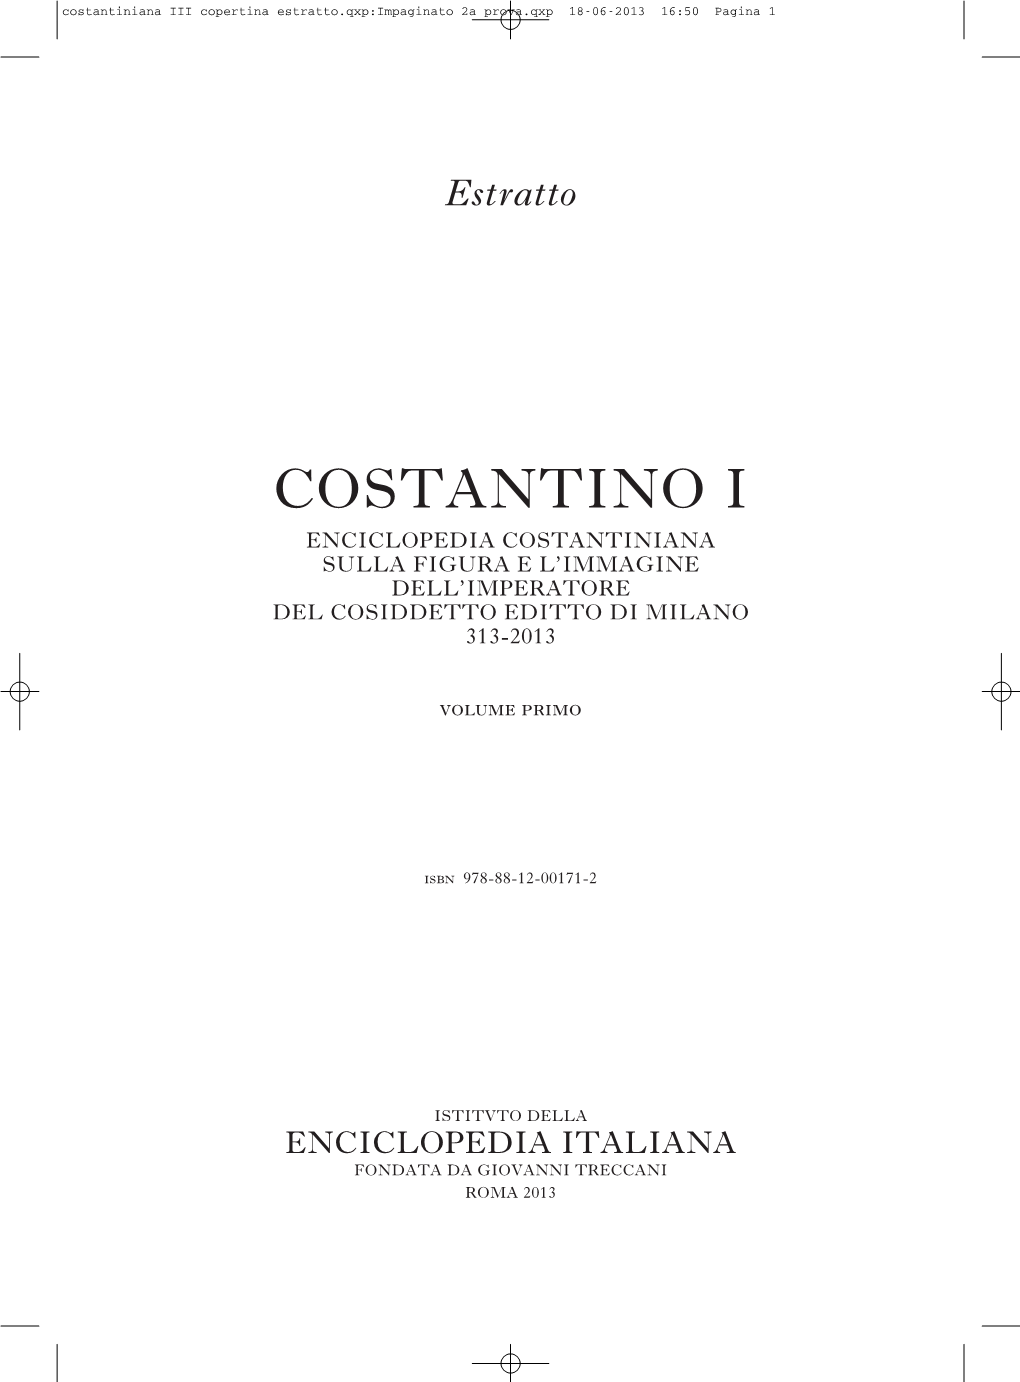 Costantino I Enciclopedia Costantiniana Sulla Figura E L’Immagine Dell’Imperatore Del Cosiddetto Editto Di Milano 313-2013